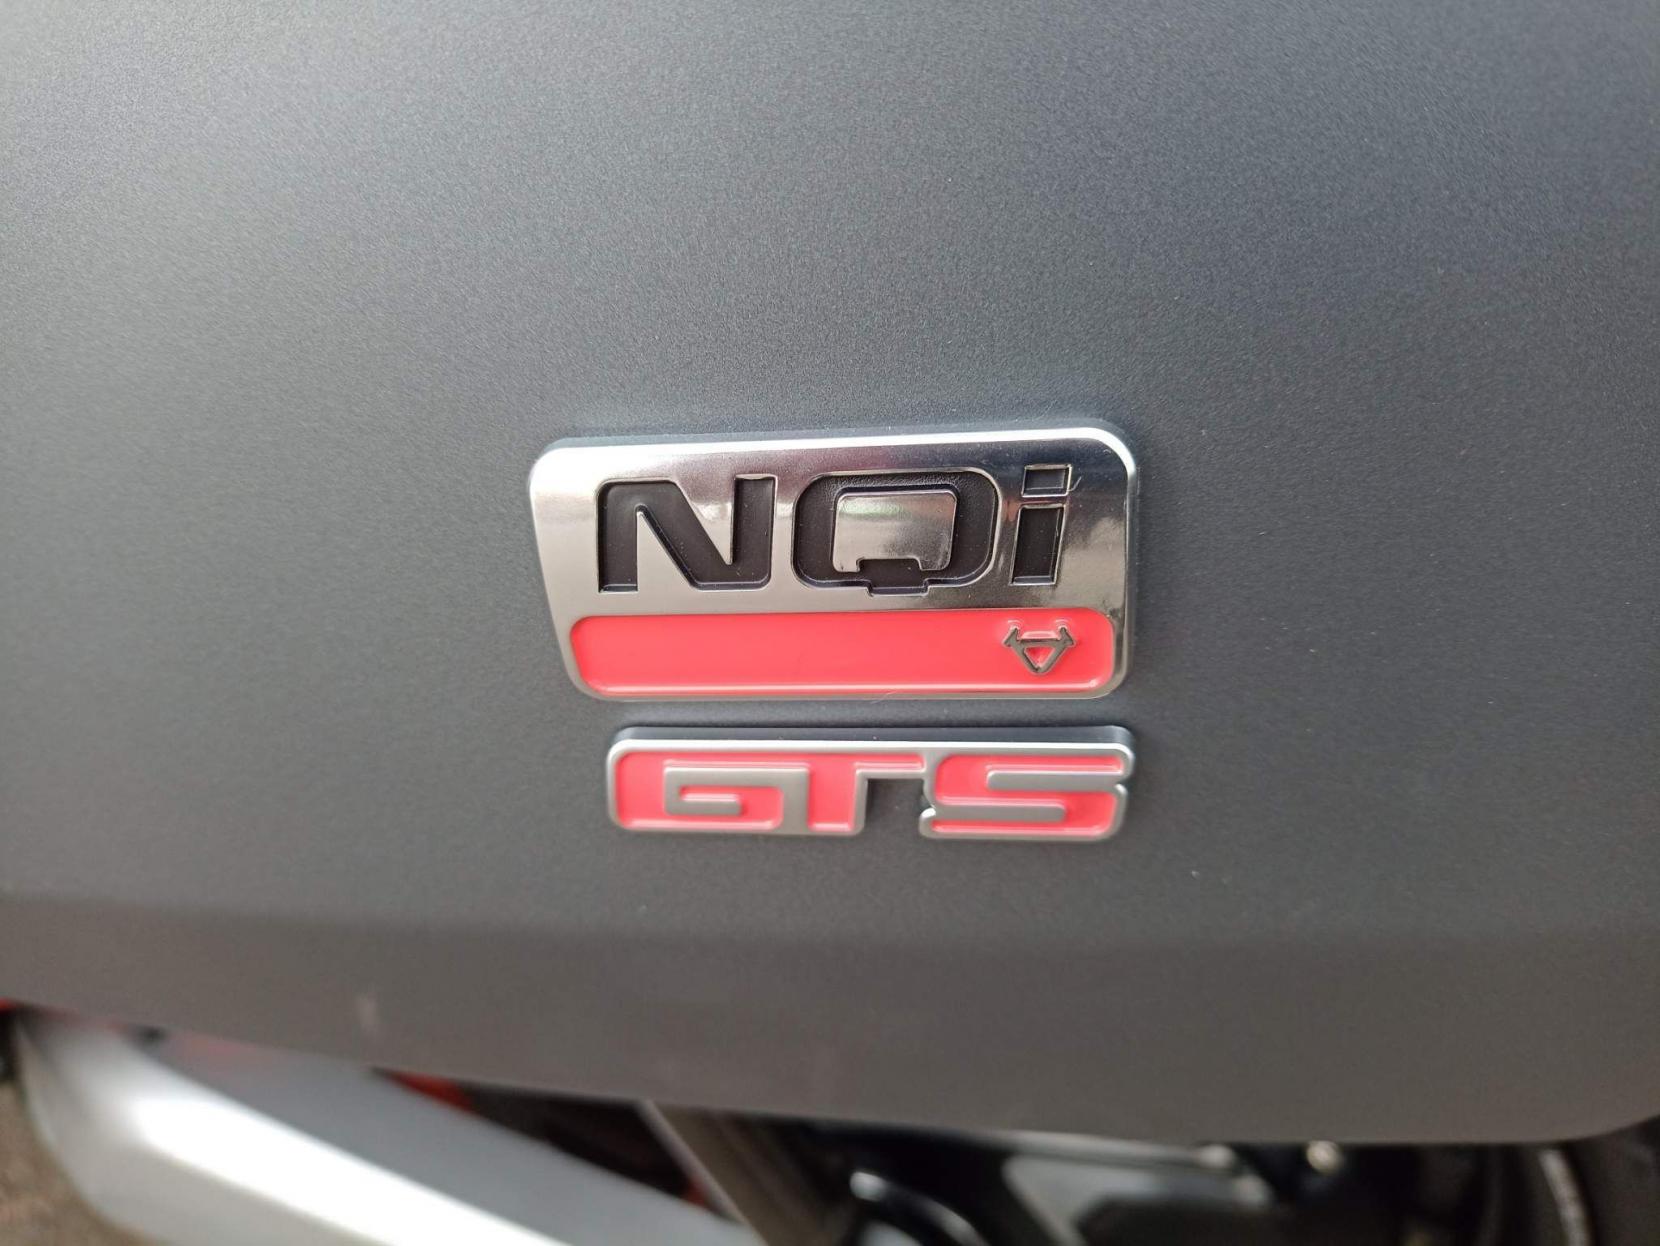 NIU NQI GTS Standard Range 0.1